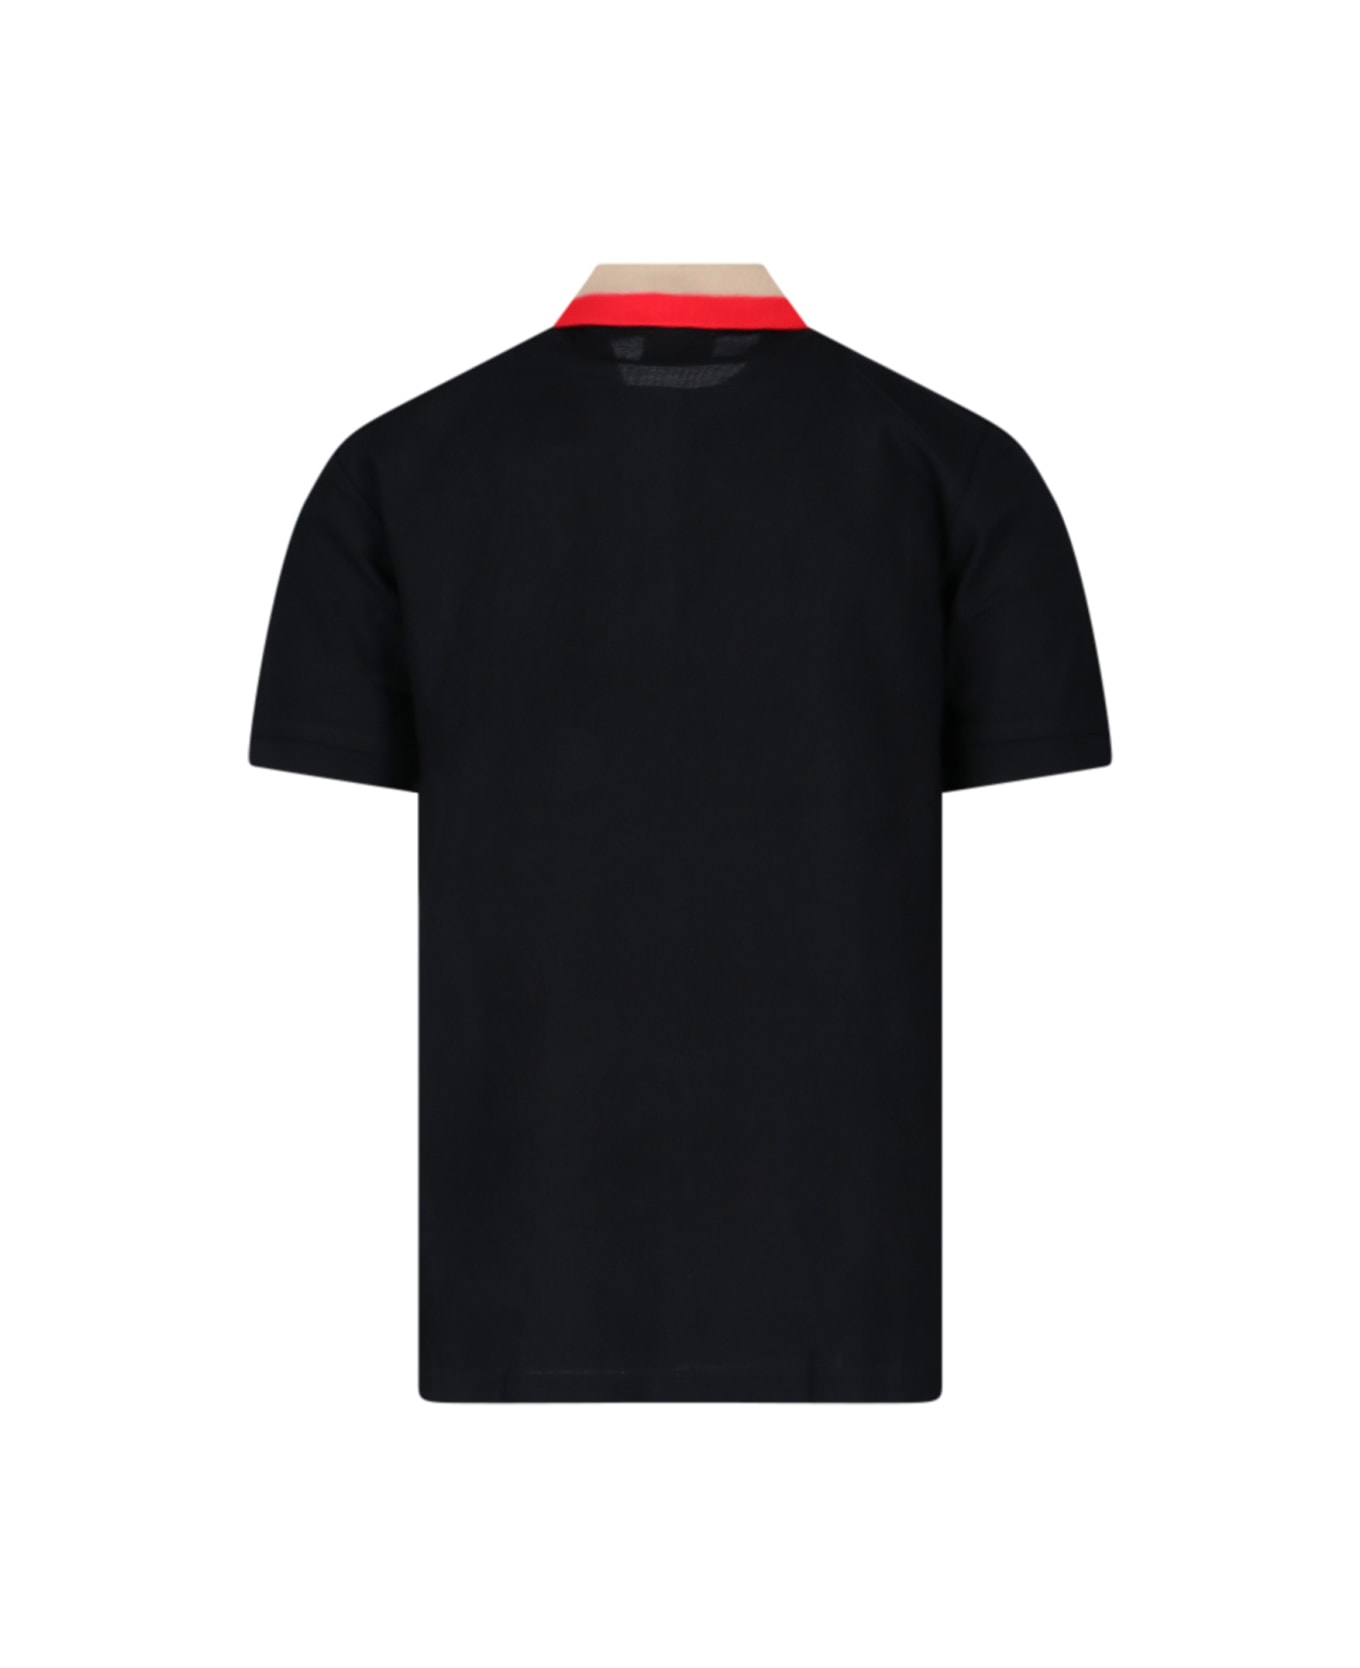 Burberry Black Piquet Polo Shirt - Black